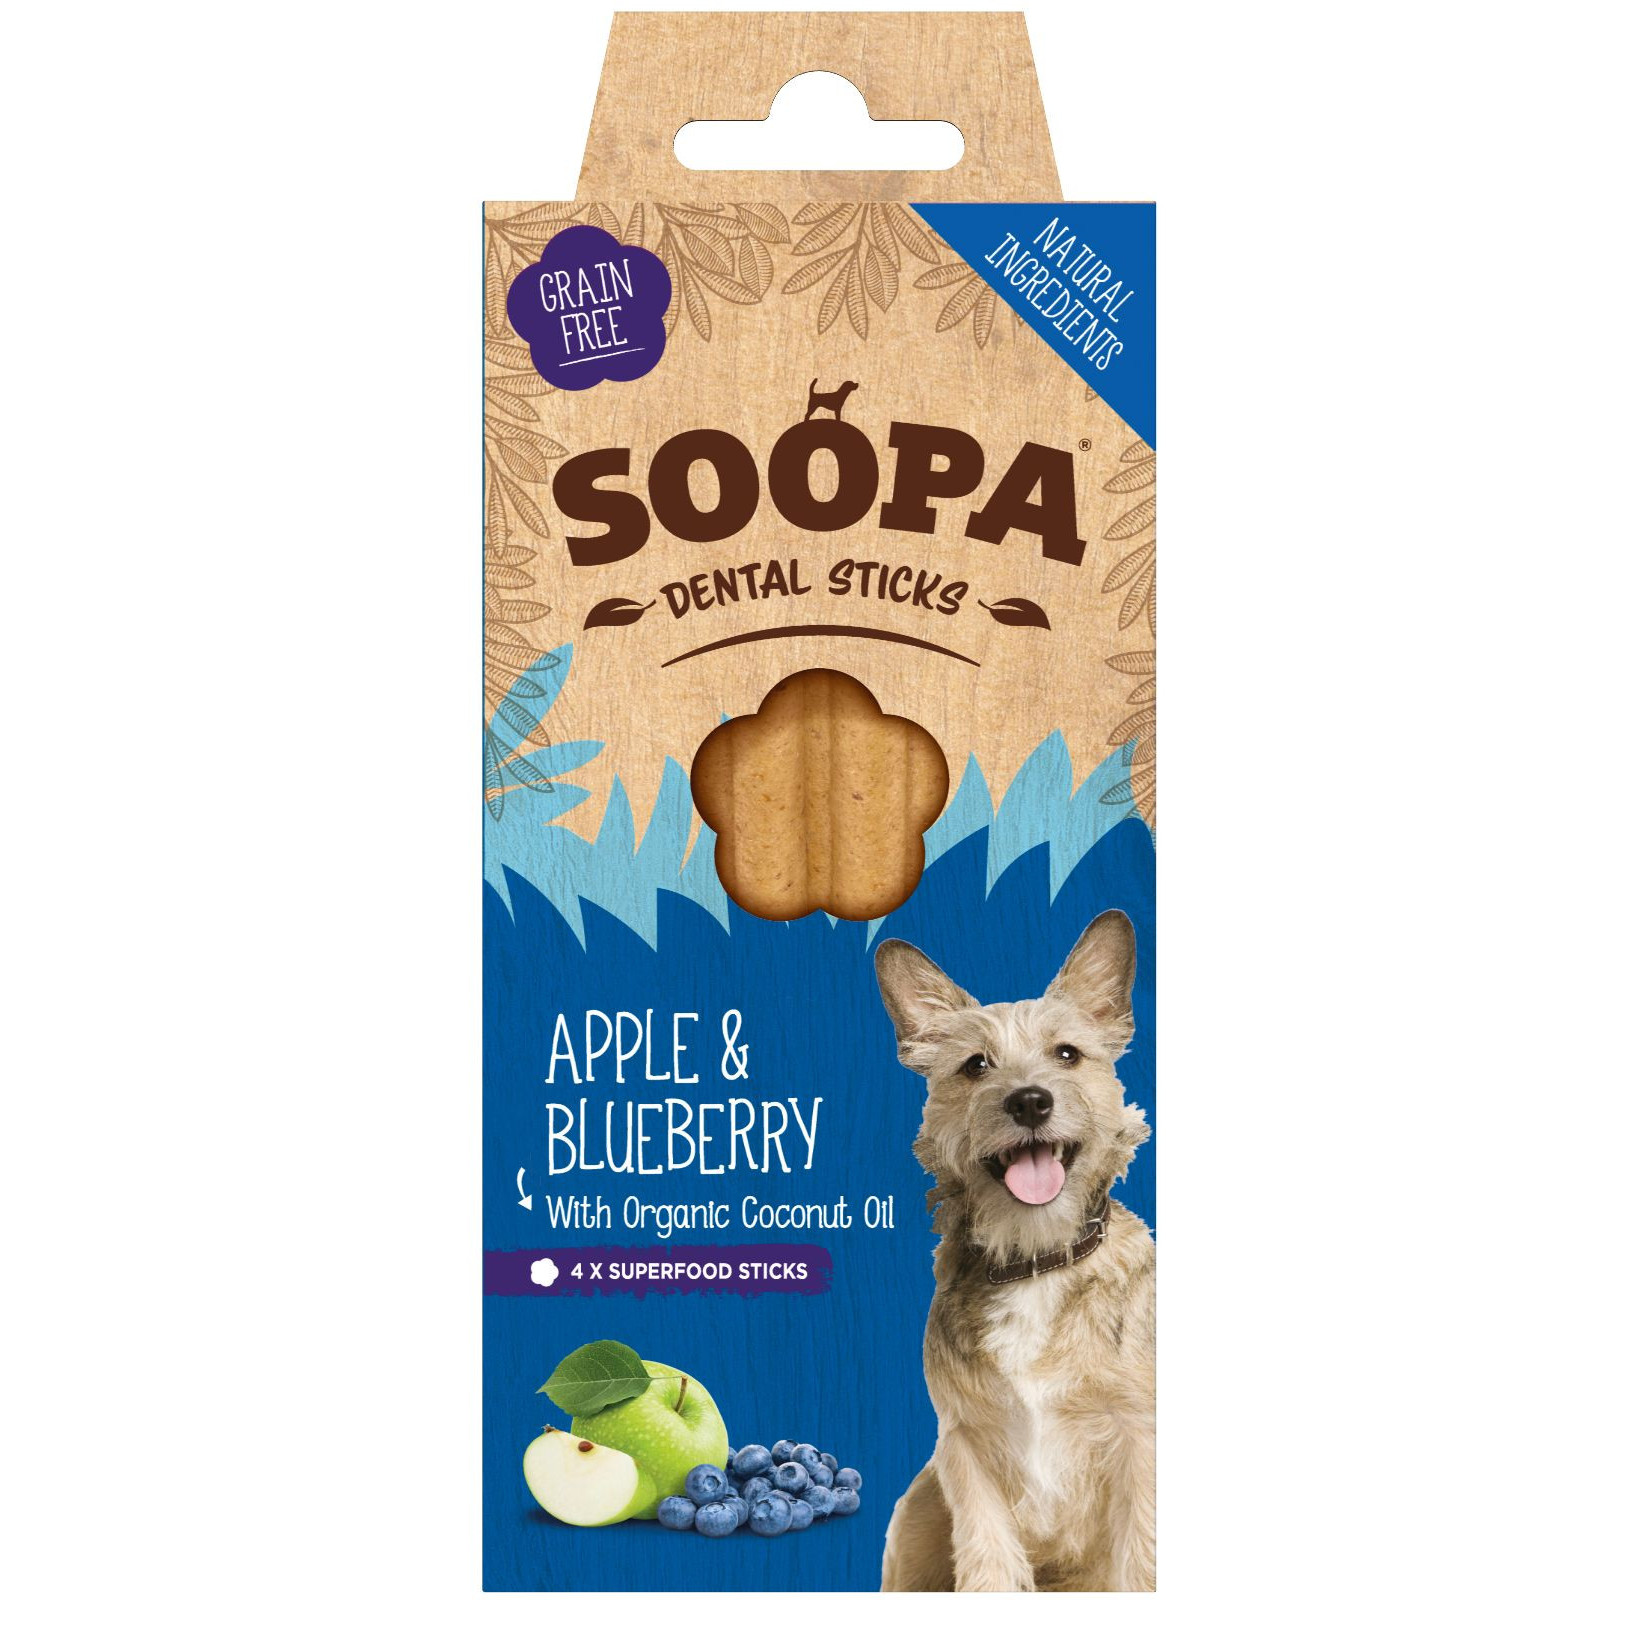 Soopa Dental Sticks met appel en bosbes voor de hond